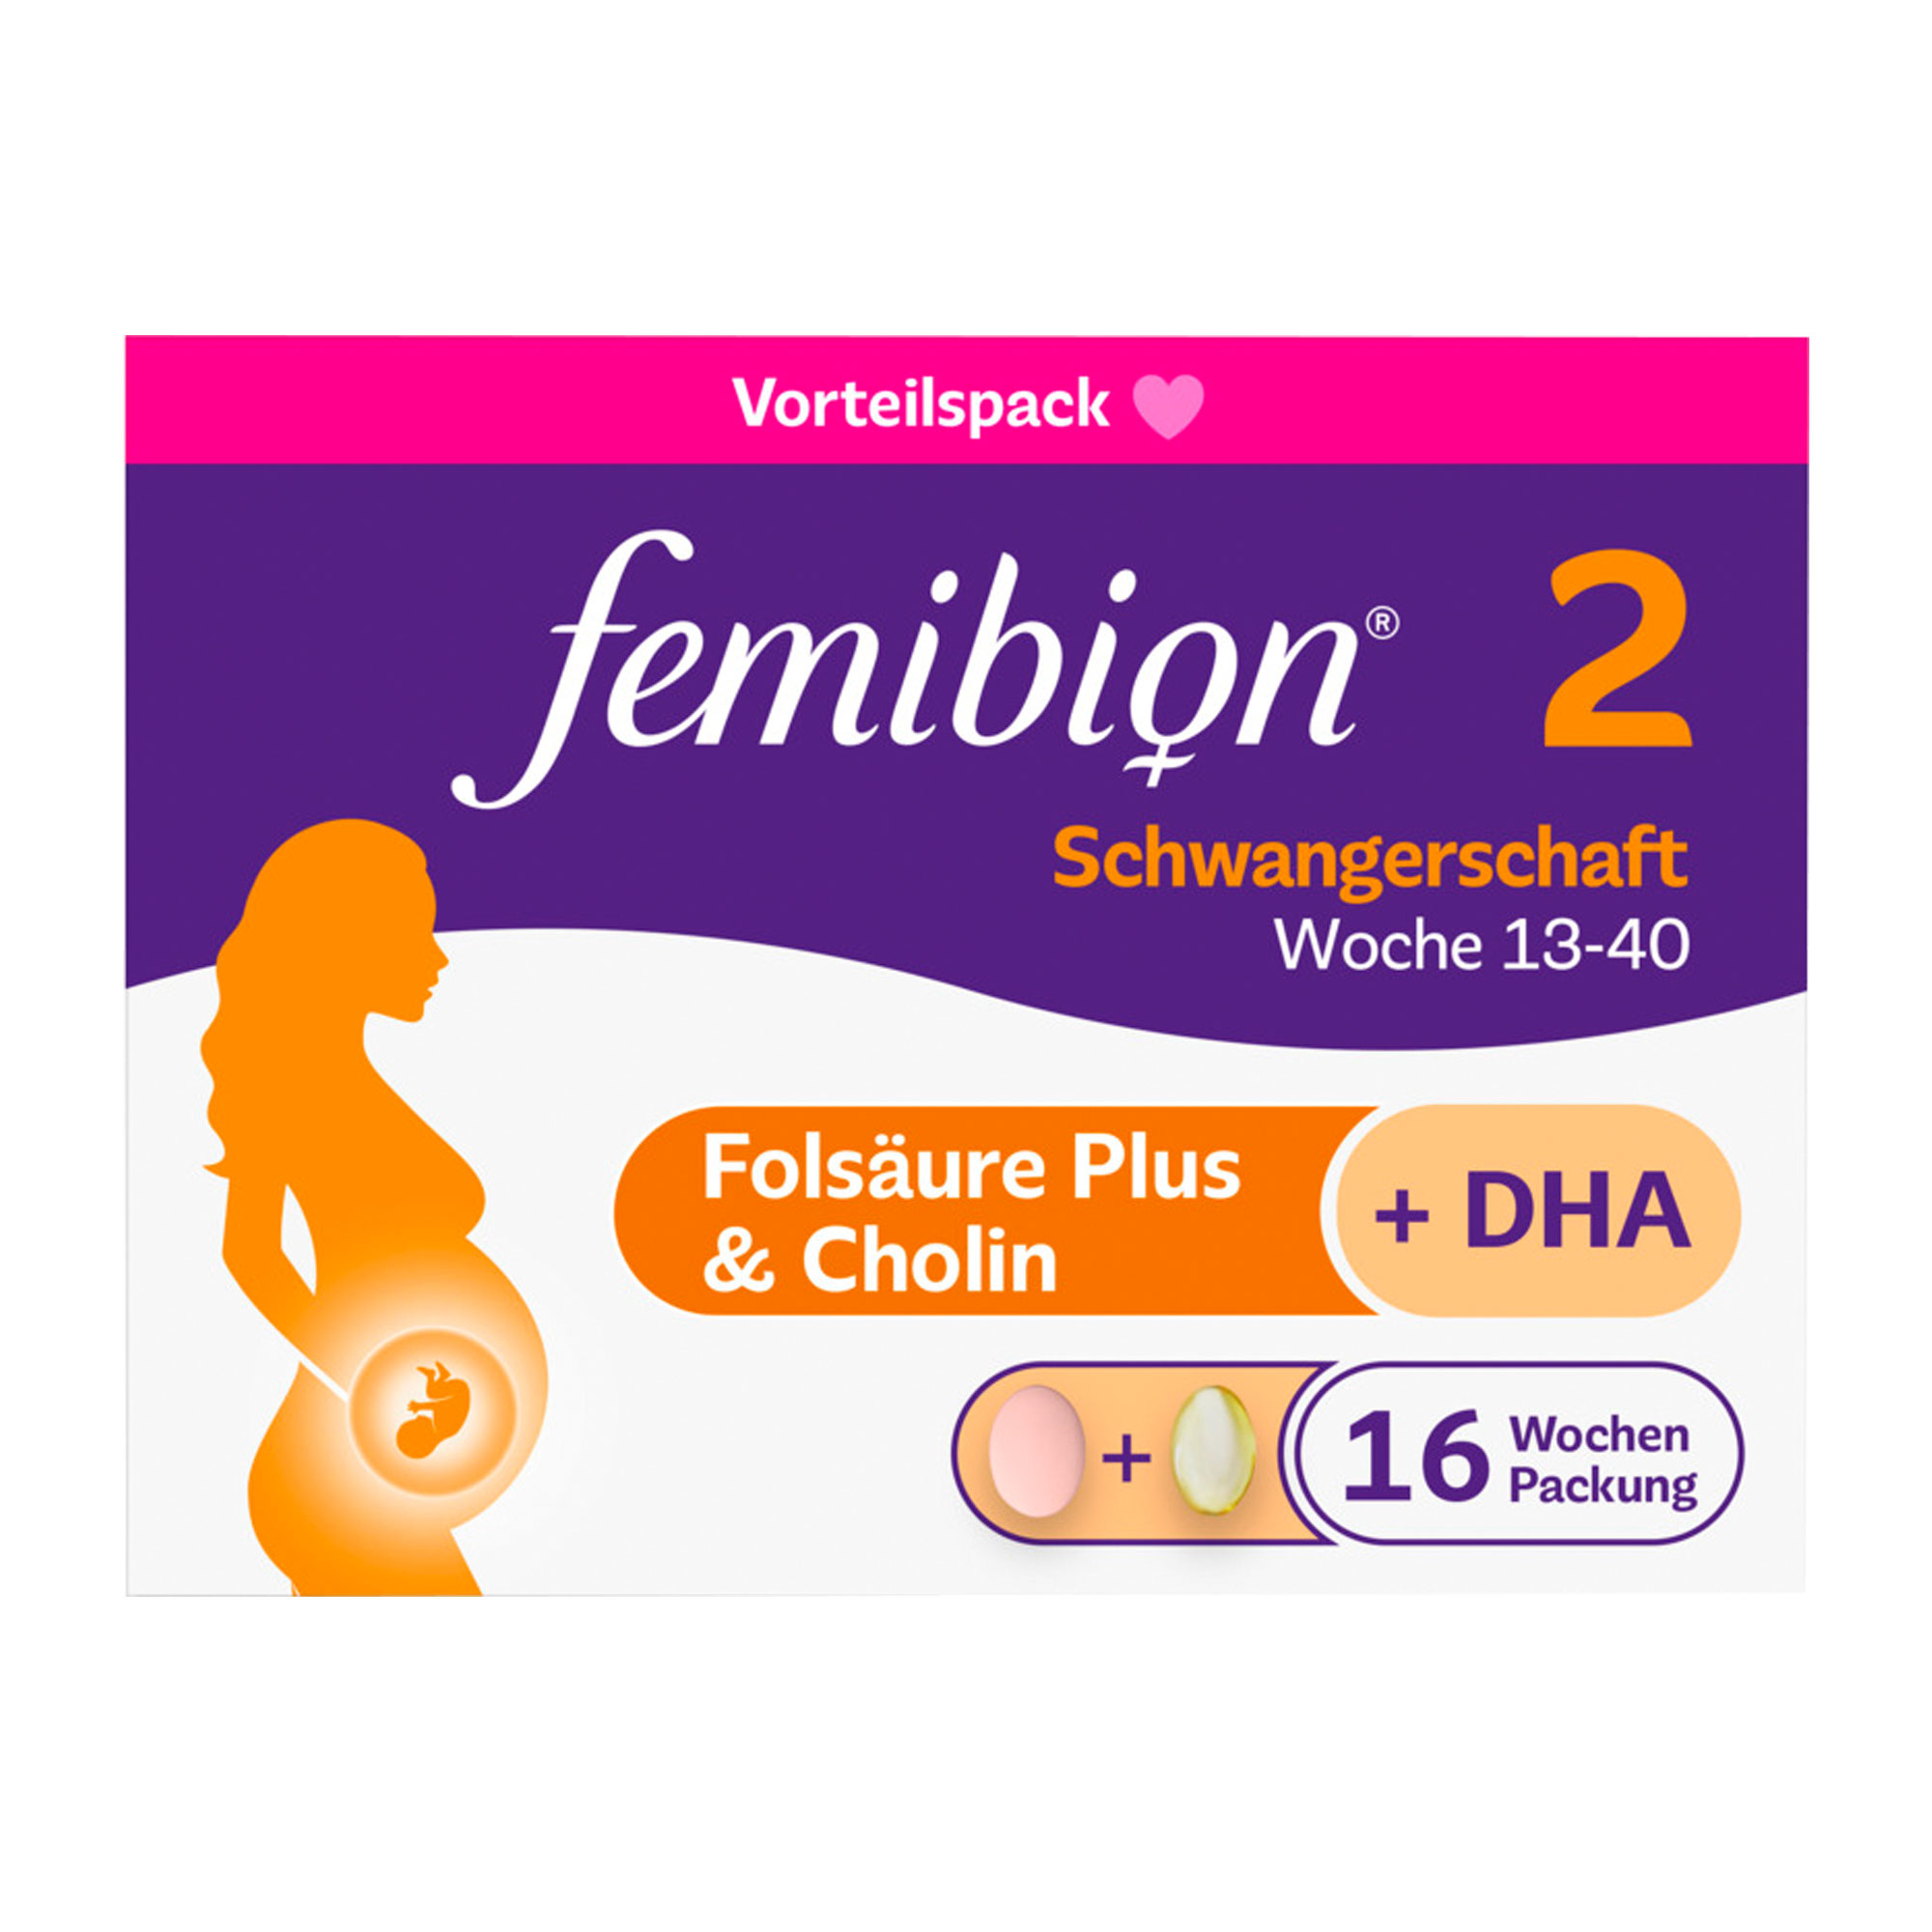 1 Tablette + 1 Kapsel Femibion 2 am Tag für eine ausreichende Versorgung mit Folat und DHA.